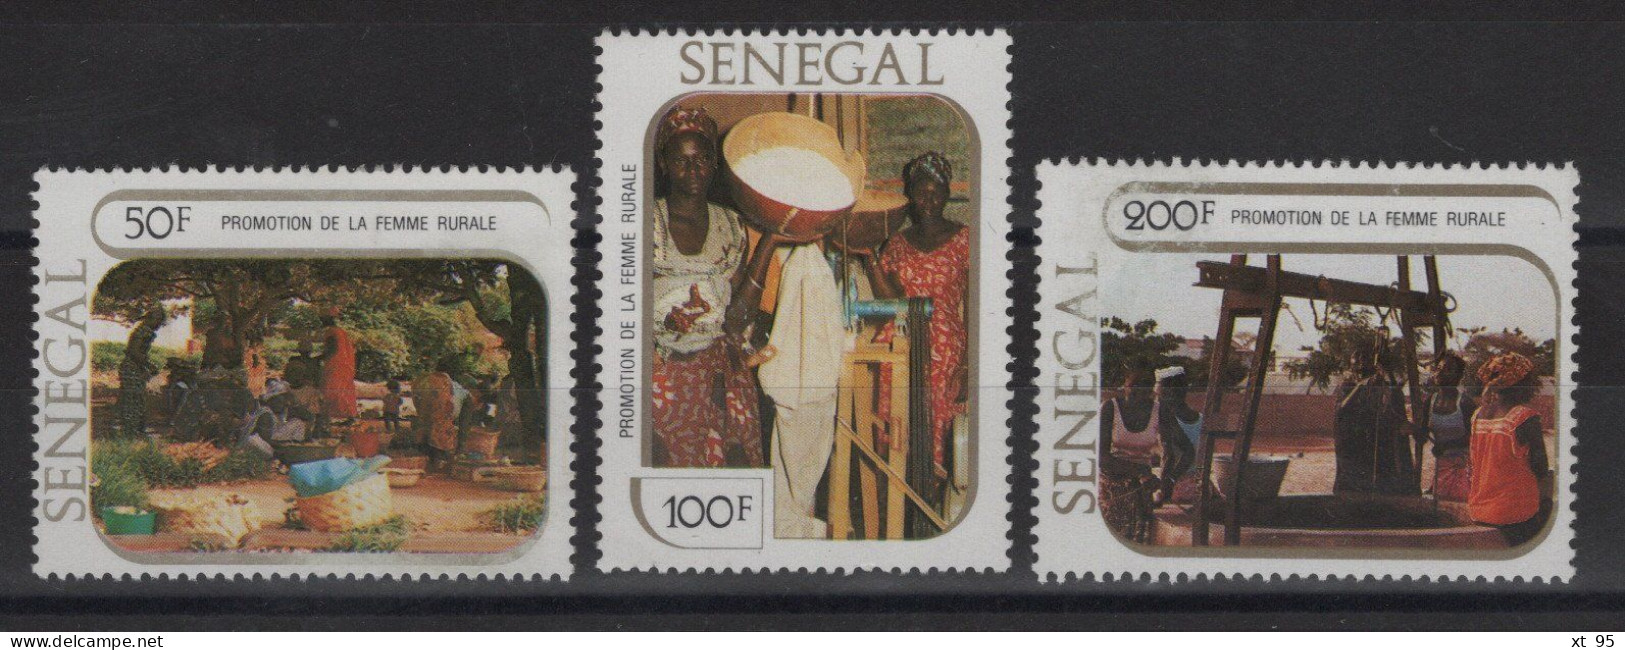 Senegal - N°539 à 541 - * Neufs Avec Trace De Charniere - Cote 4.50€ - Sénégal (1960-...)